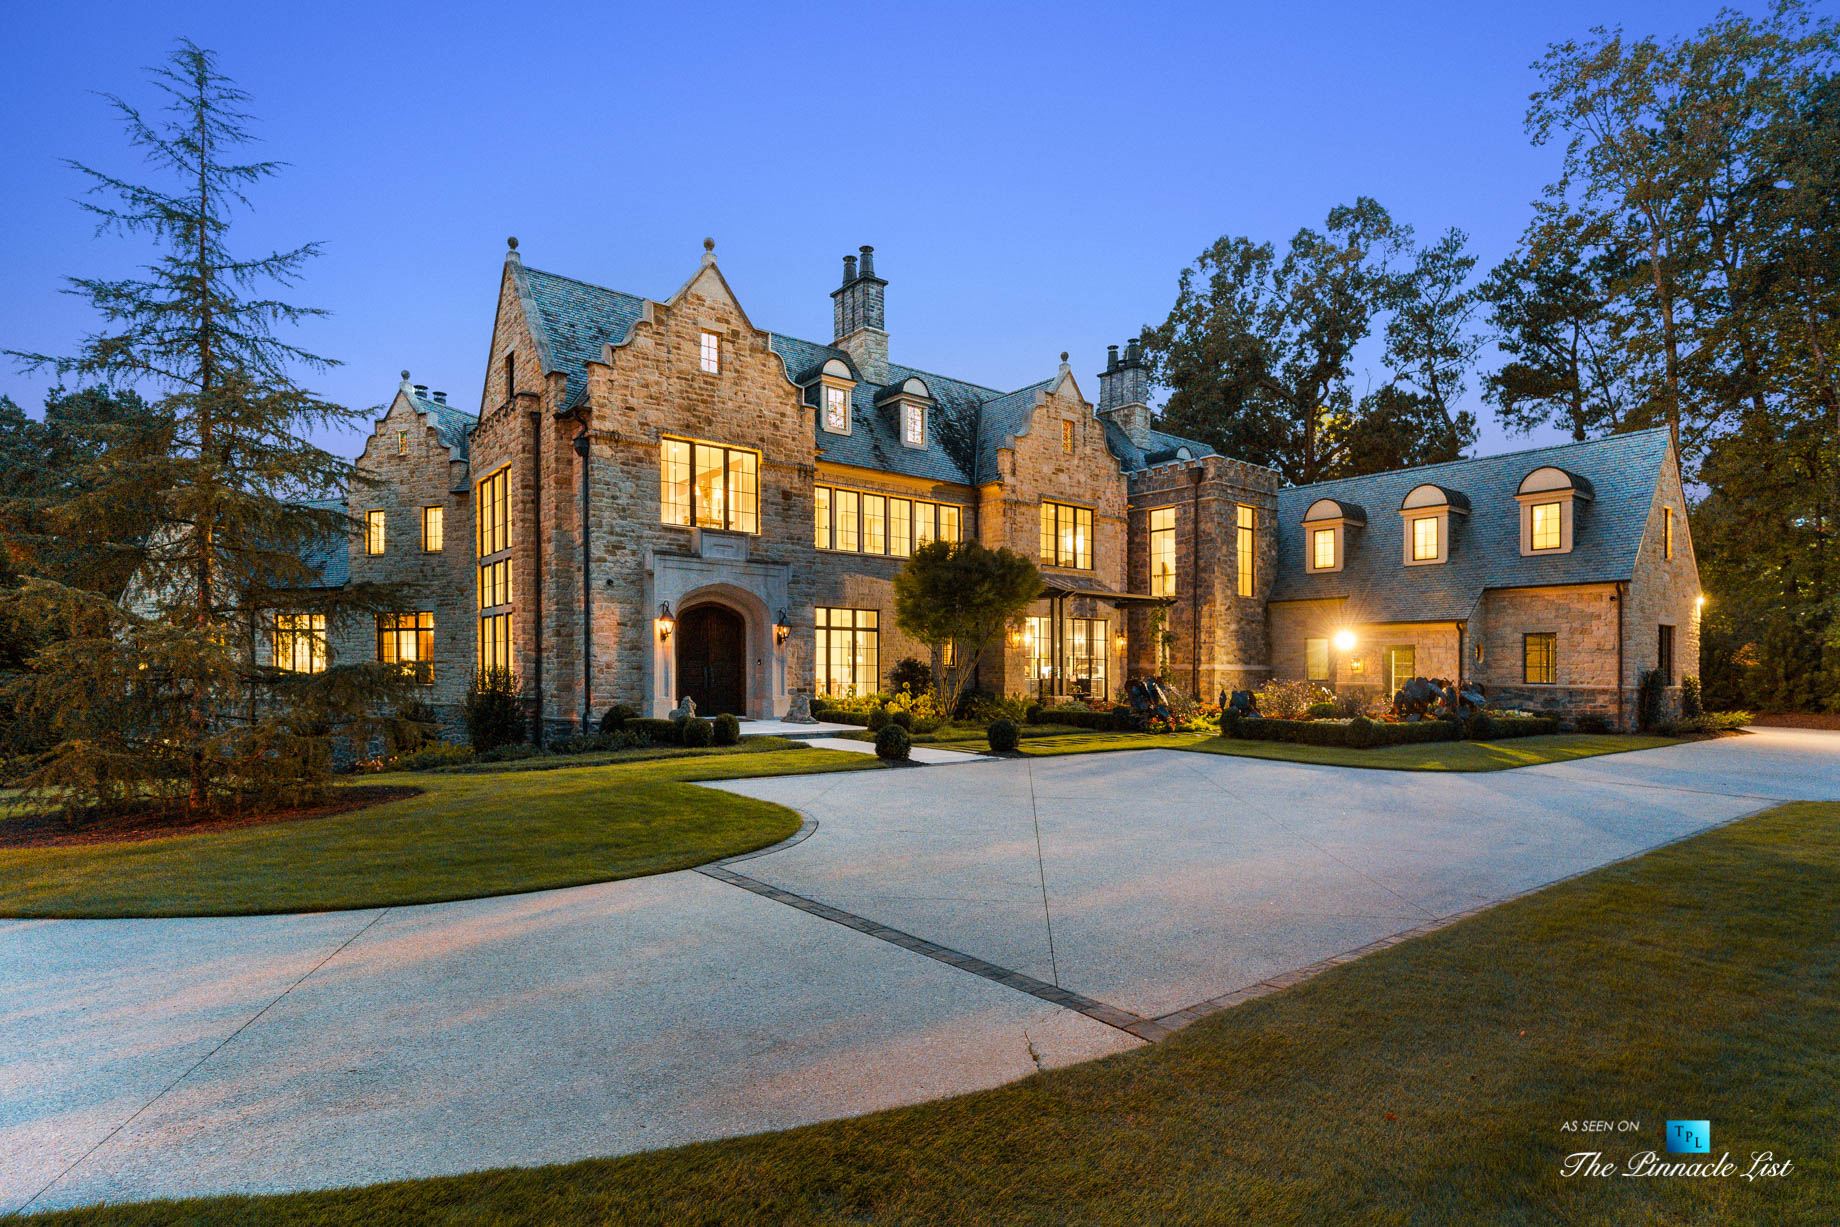 1150 W Garmon Rd, Atlanta, GA, USA - Front Property Grounds at Night - Luxury Real Estate - Buckhead Estate House